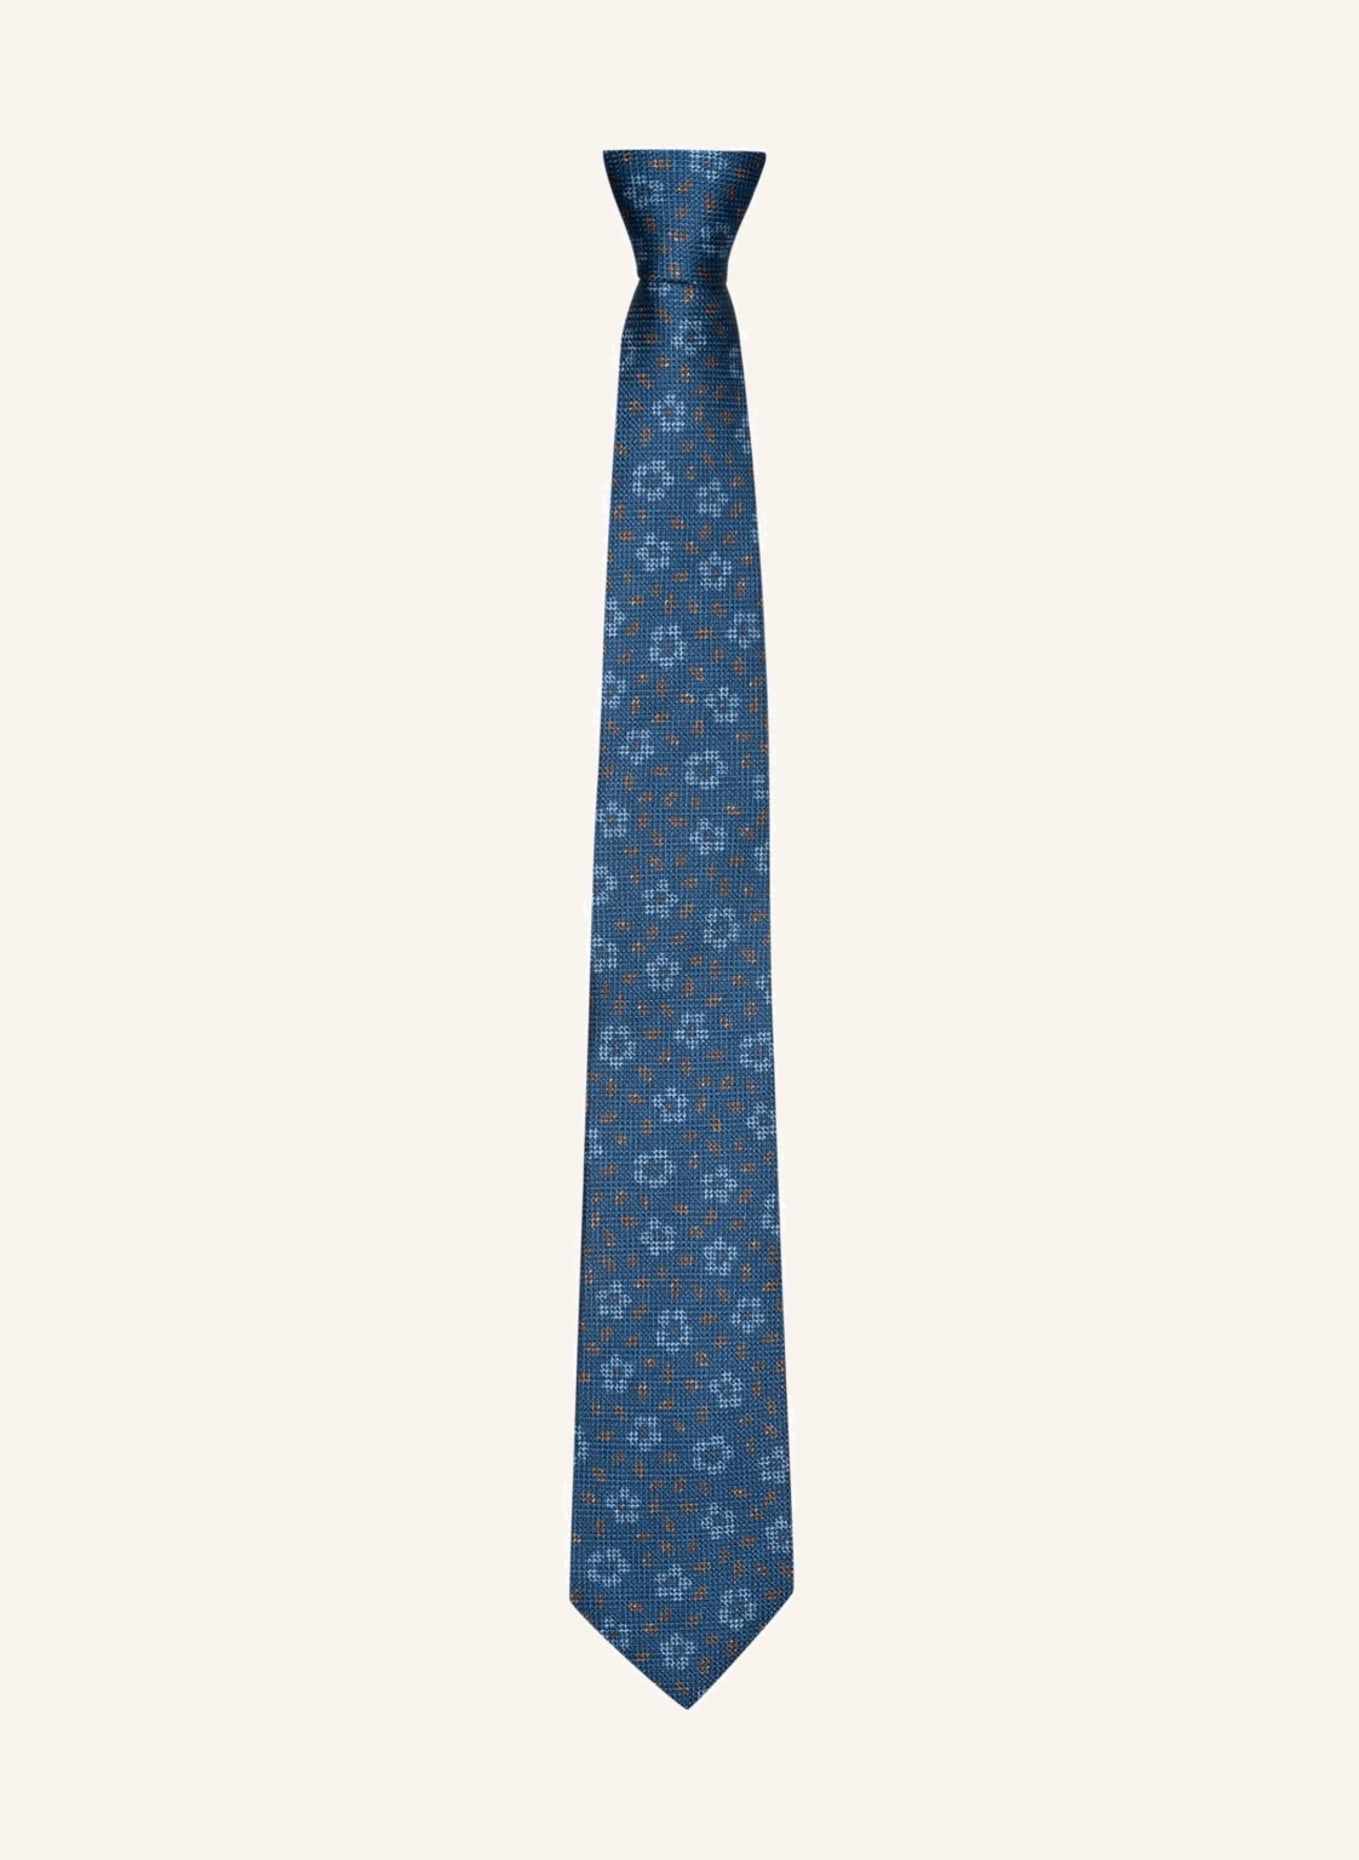 OLYMP in beige hellblau/ Krawatte blau/ SIGNATURE